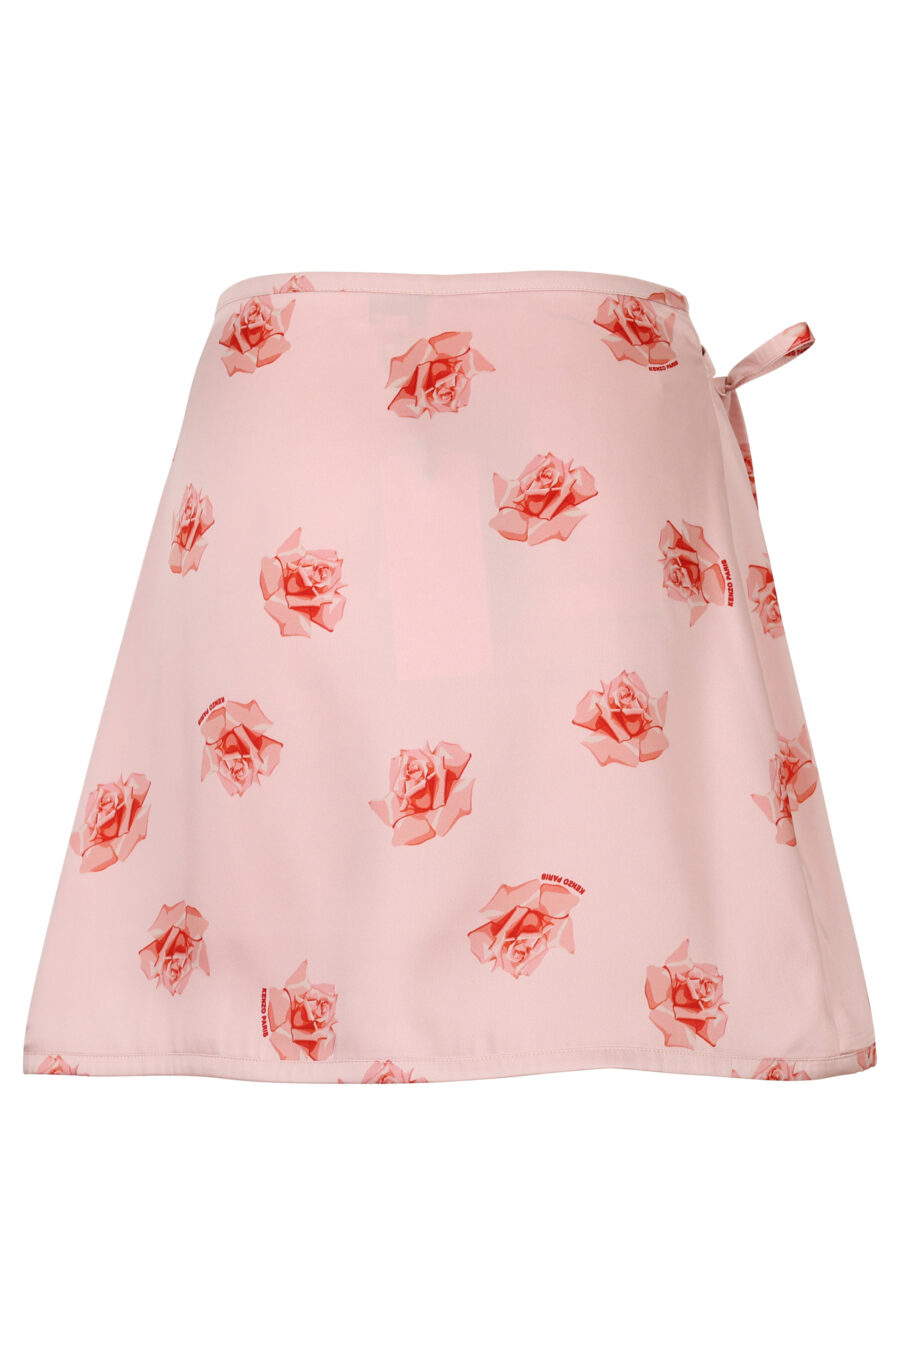 Falda rosa con estampado "kenzo rose" - 3612230616165 1